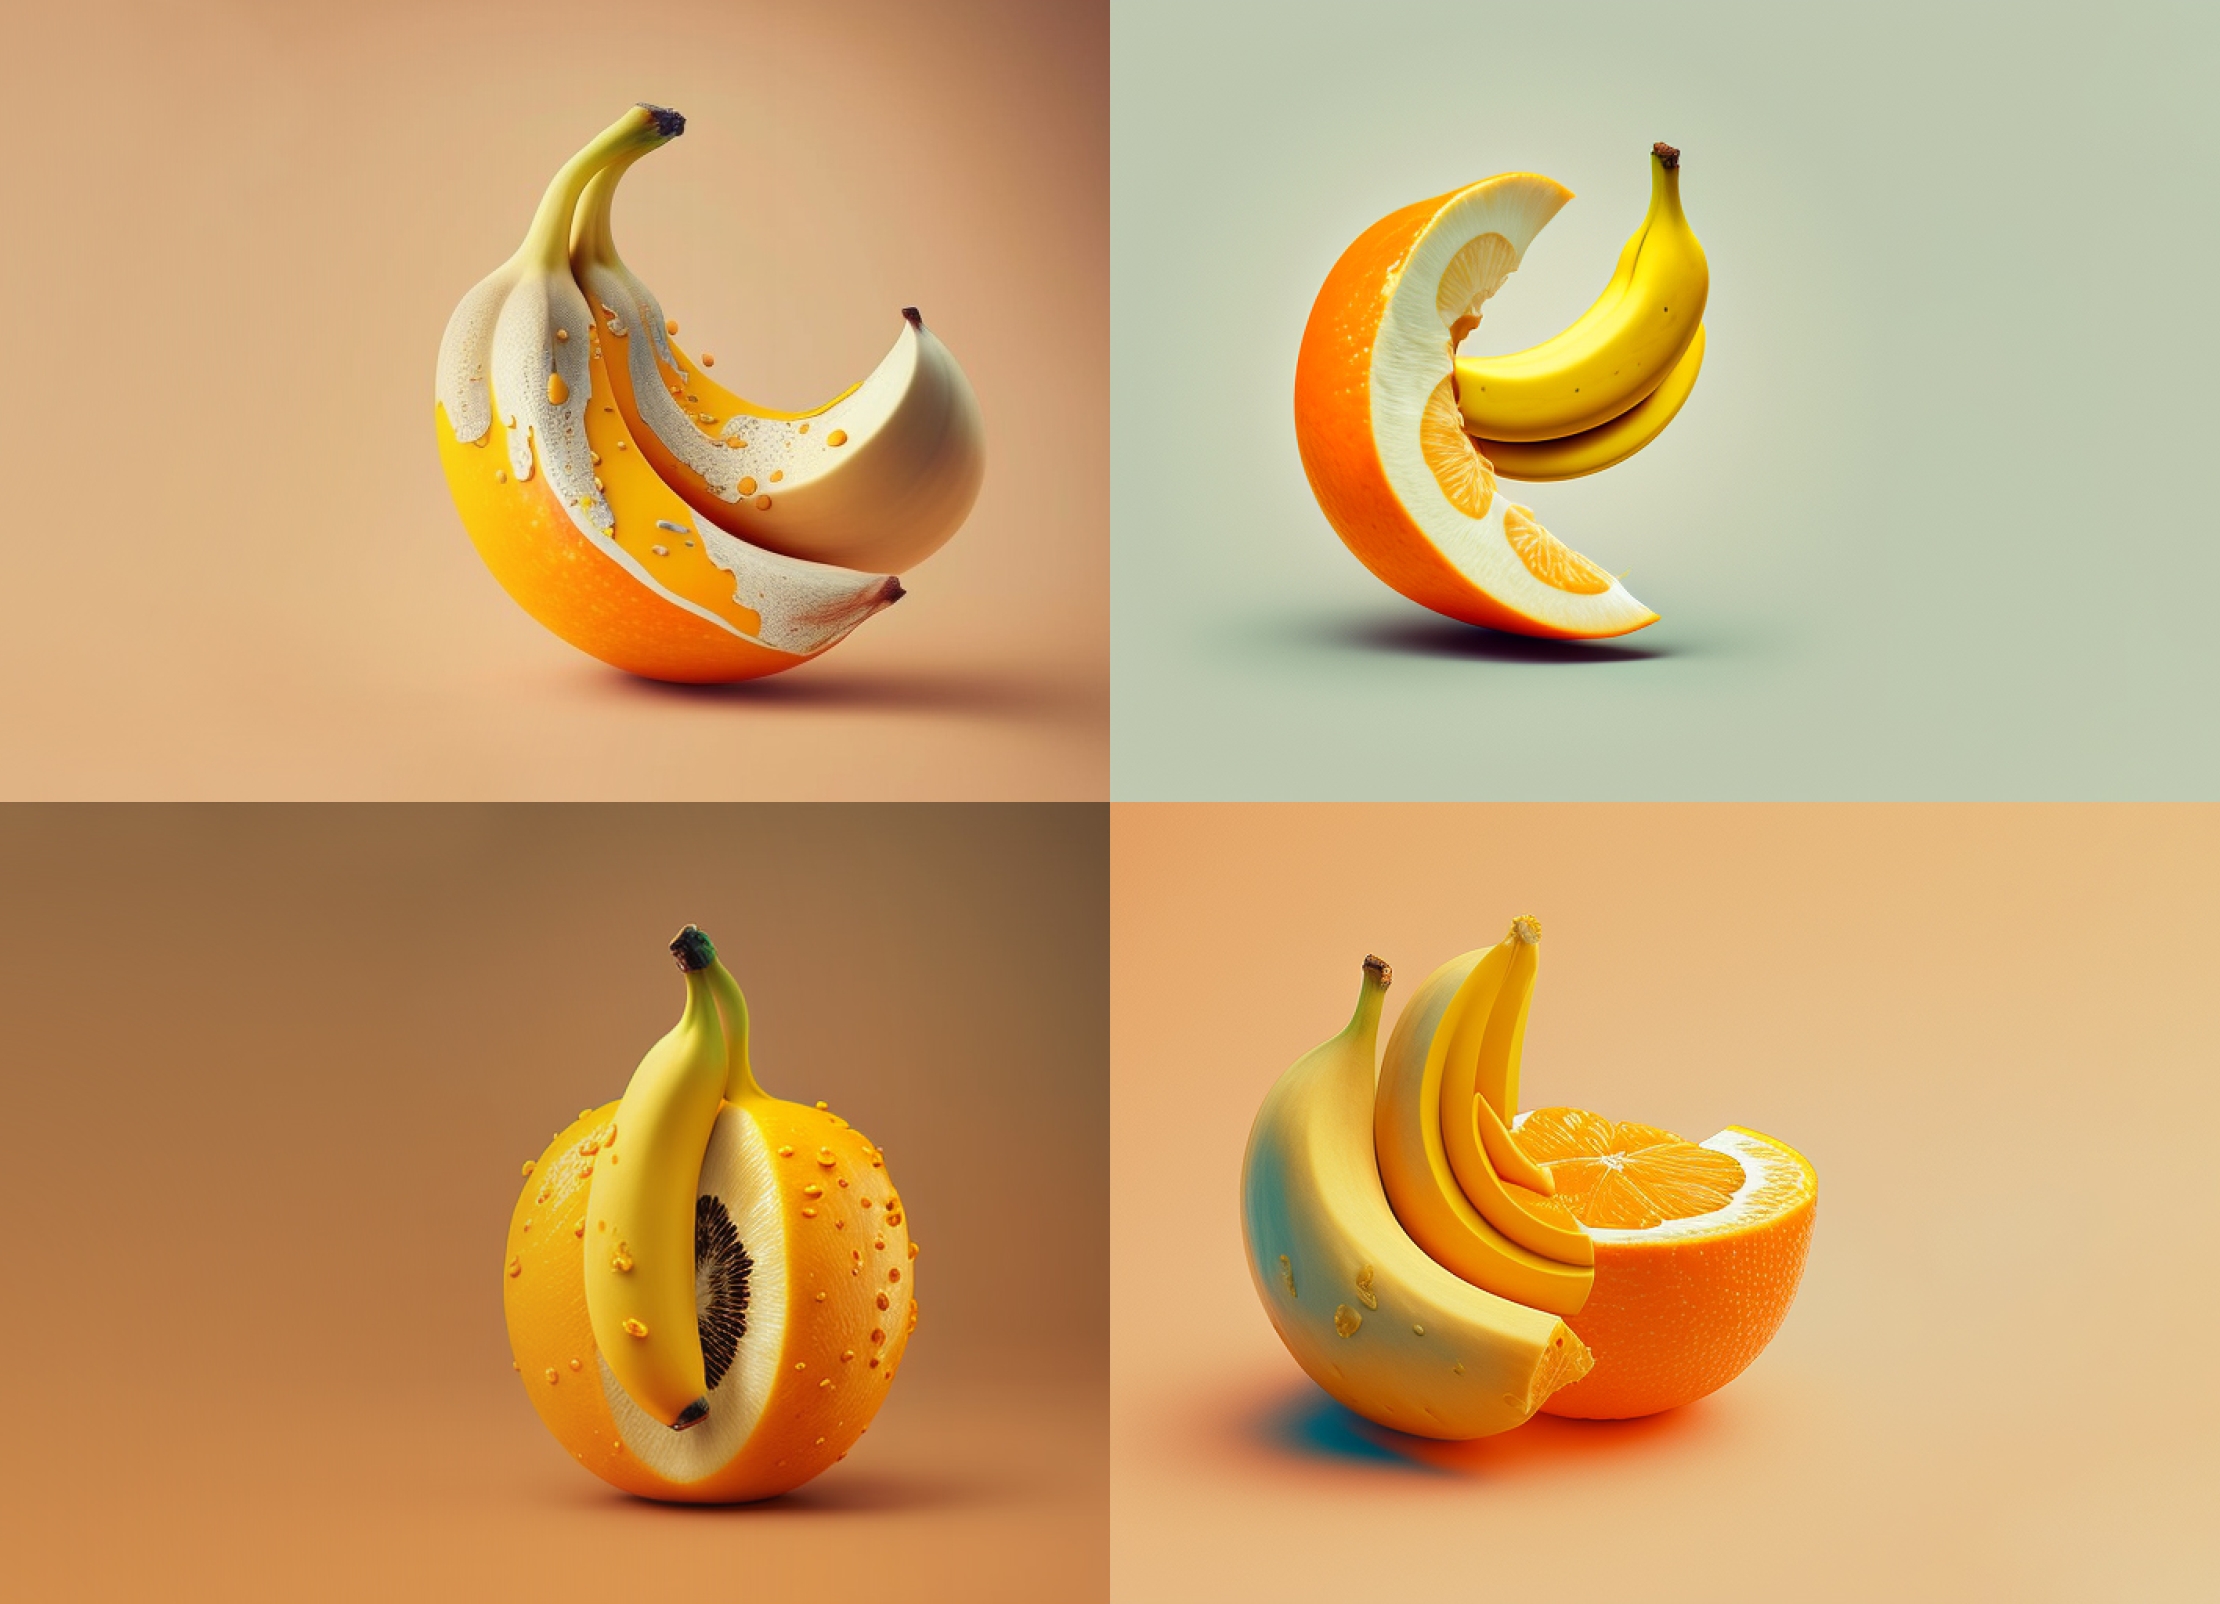 banana mixed with orange